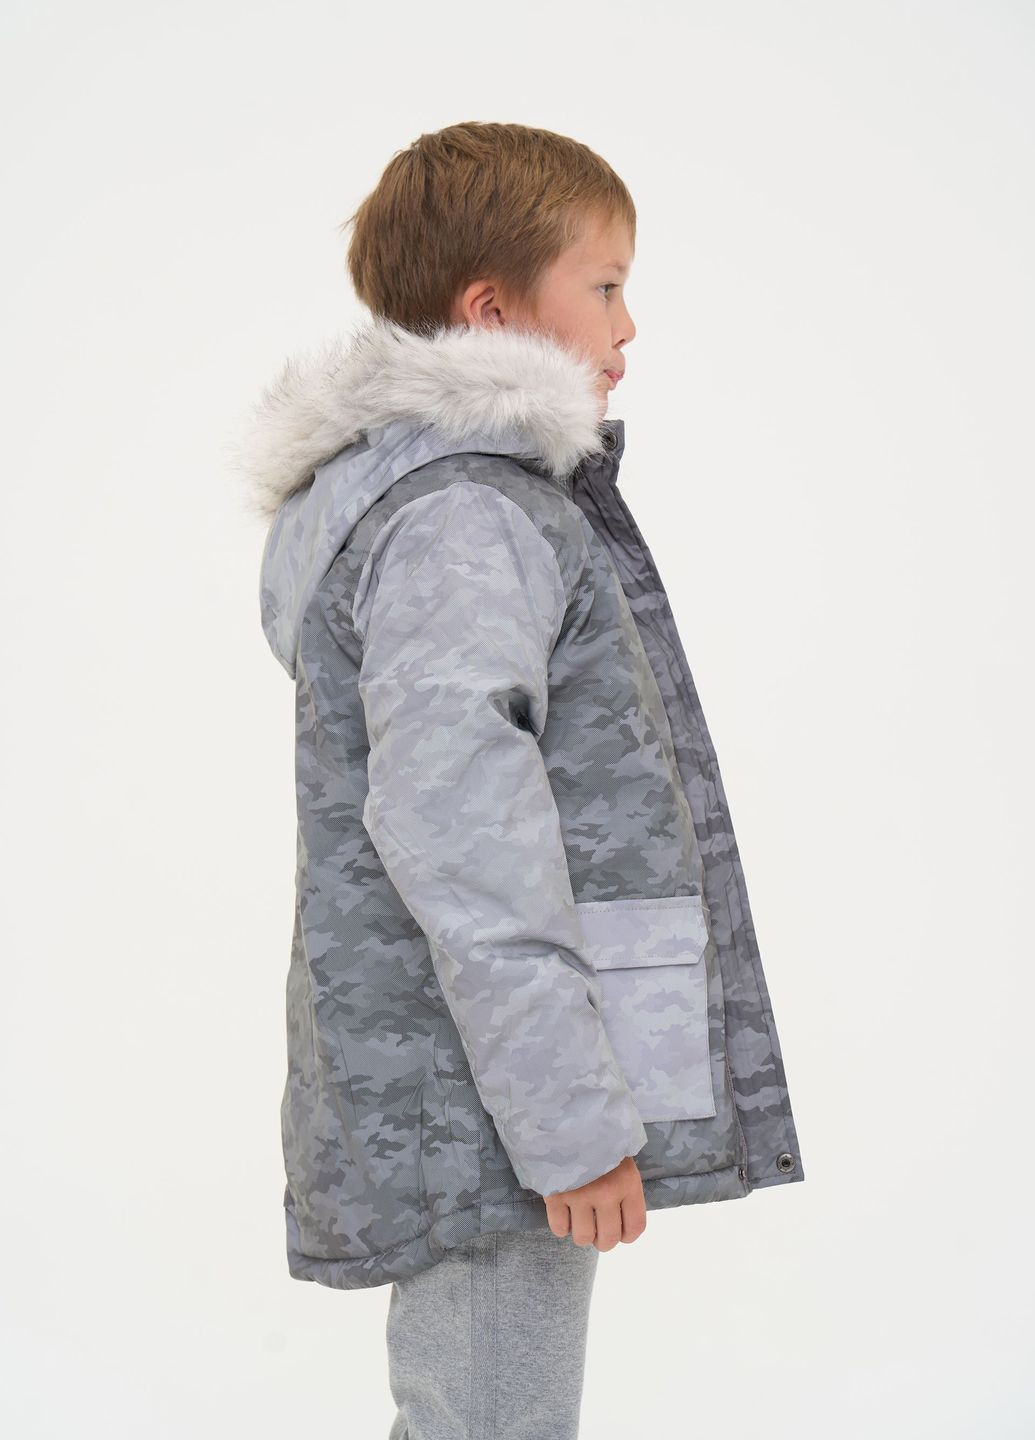 Сіра зимня тепла дитяча куртка з хутряним капюшоном, сірий камуфляж Yumster